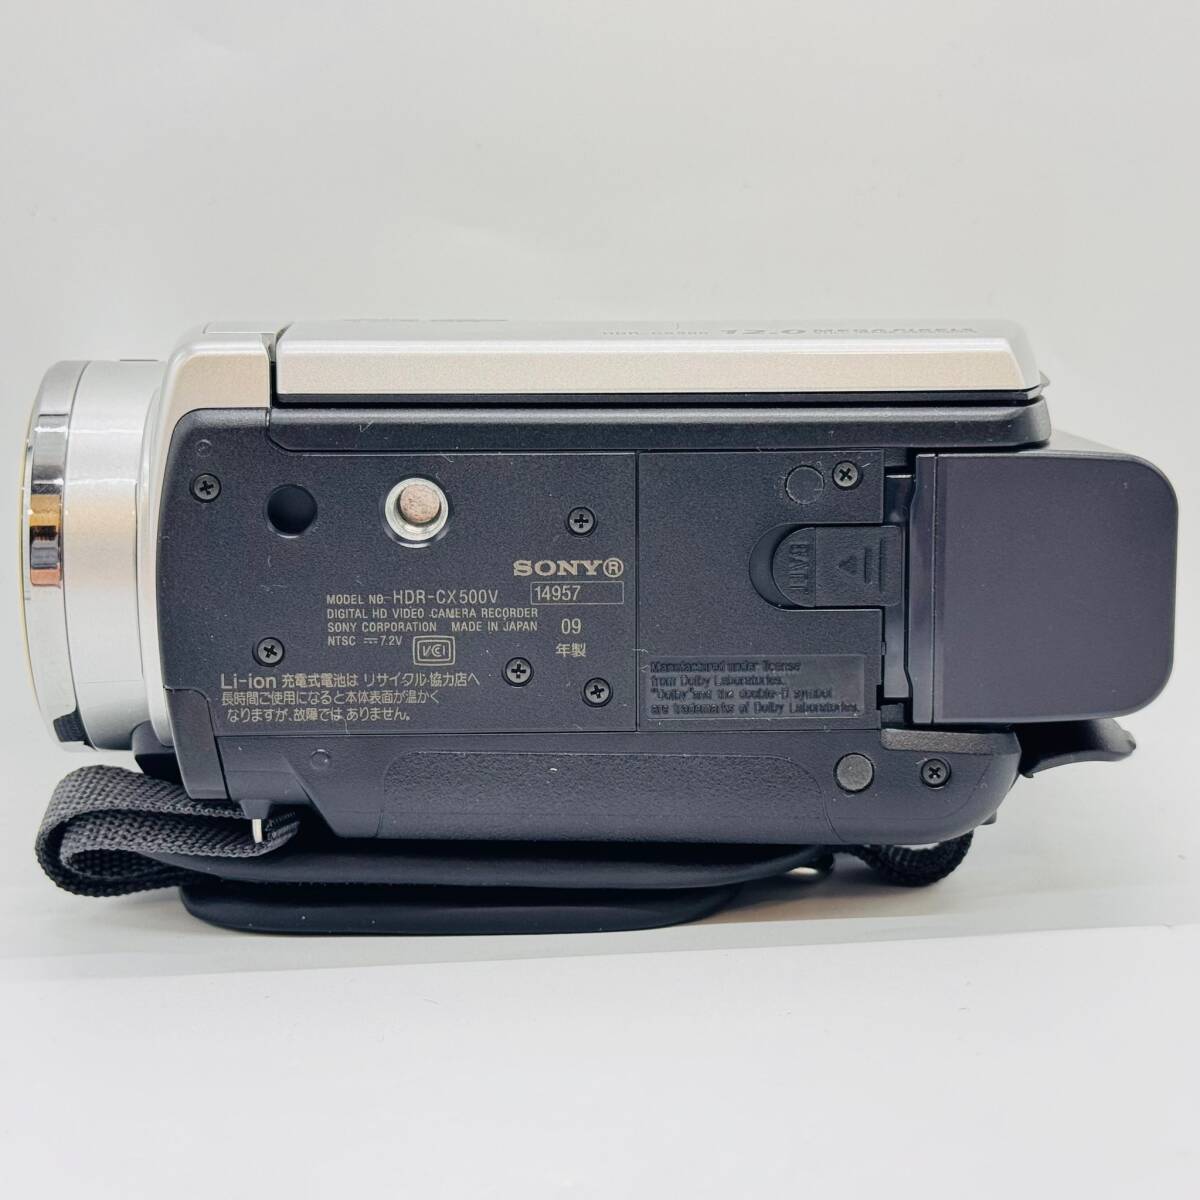 SONY HDR-CX500V цифровой HD видео камера магнитофон электризация 0 6659 1 иен лот Sony маленький размер работа товар фотосъемка дешевый серебряный принадлежности имеется Handycam 